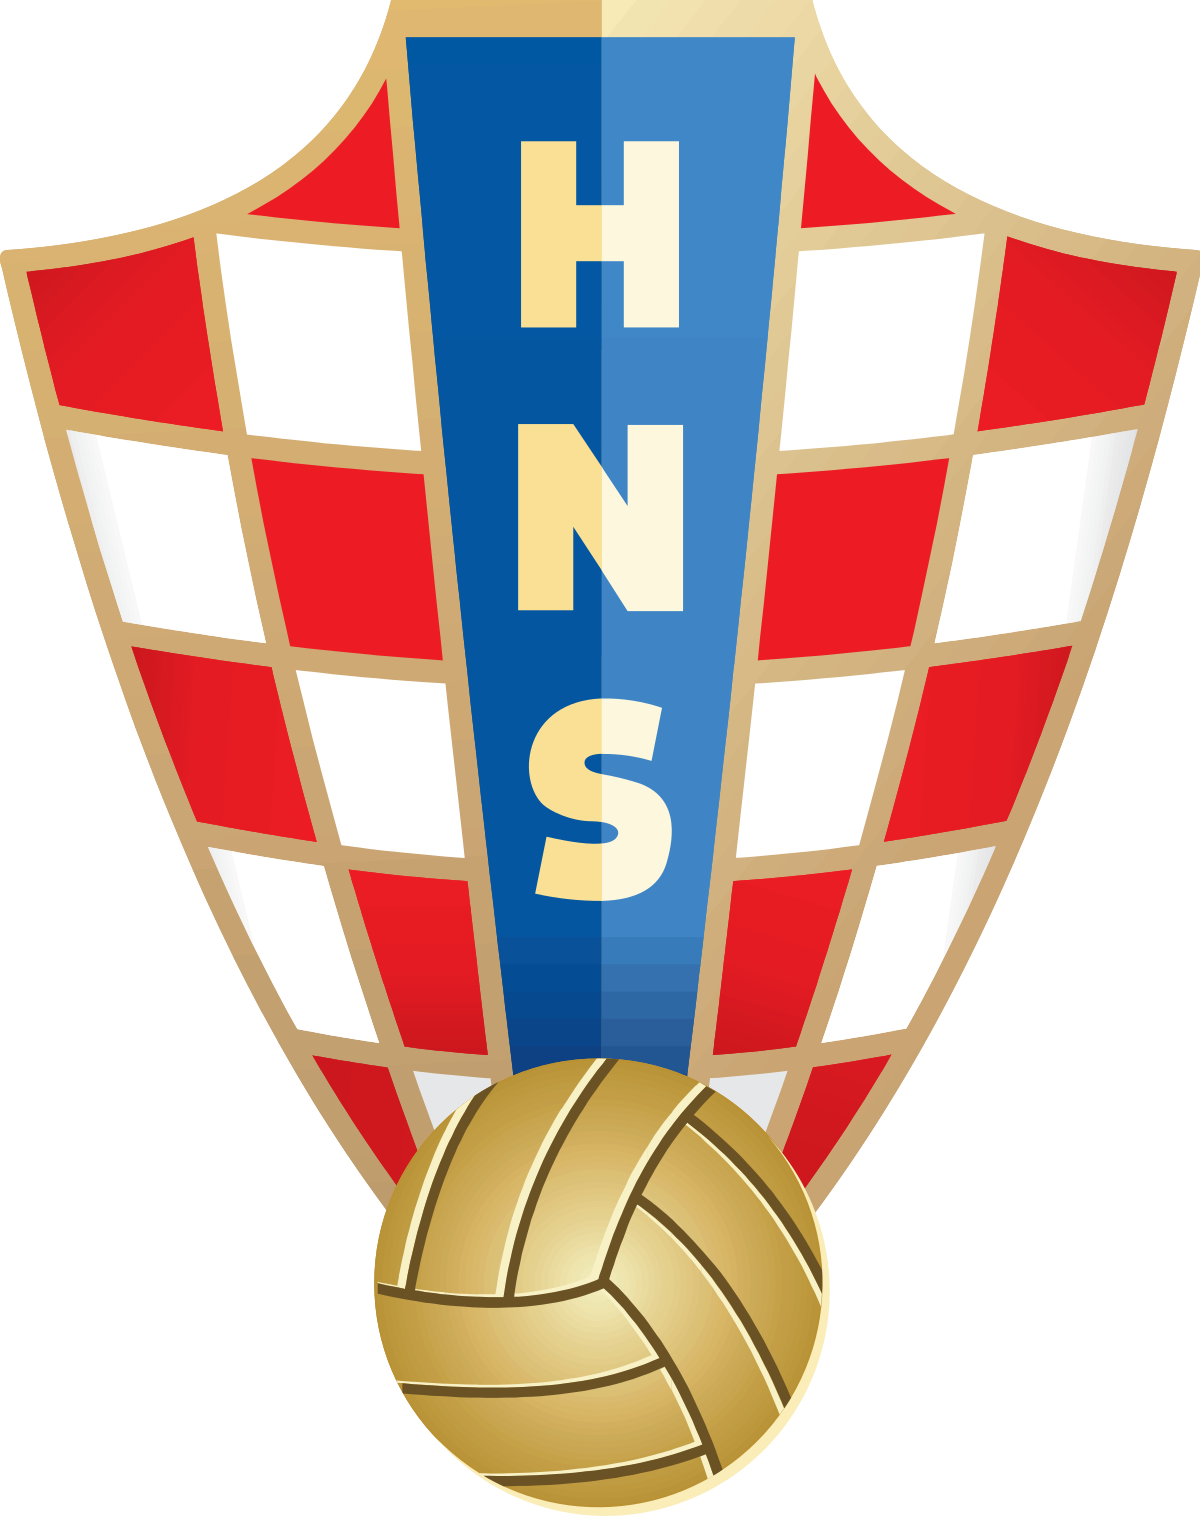 Croatia-2 logo